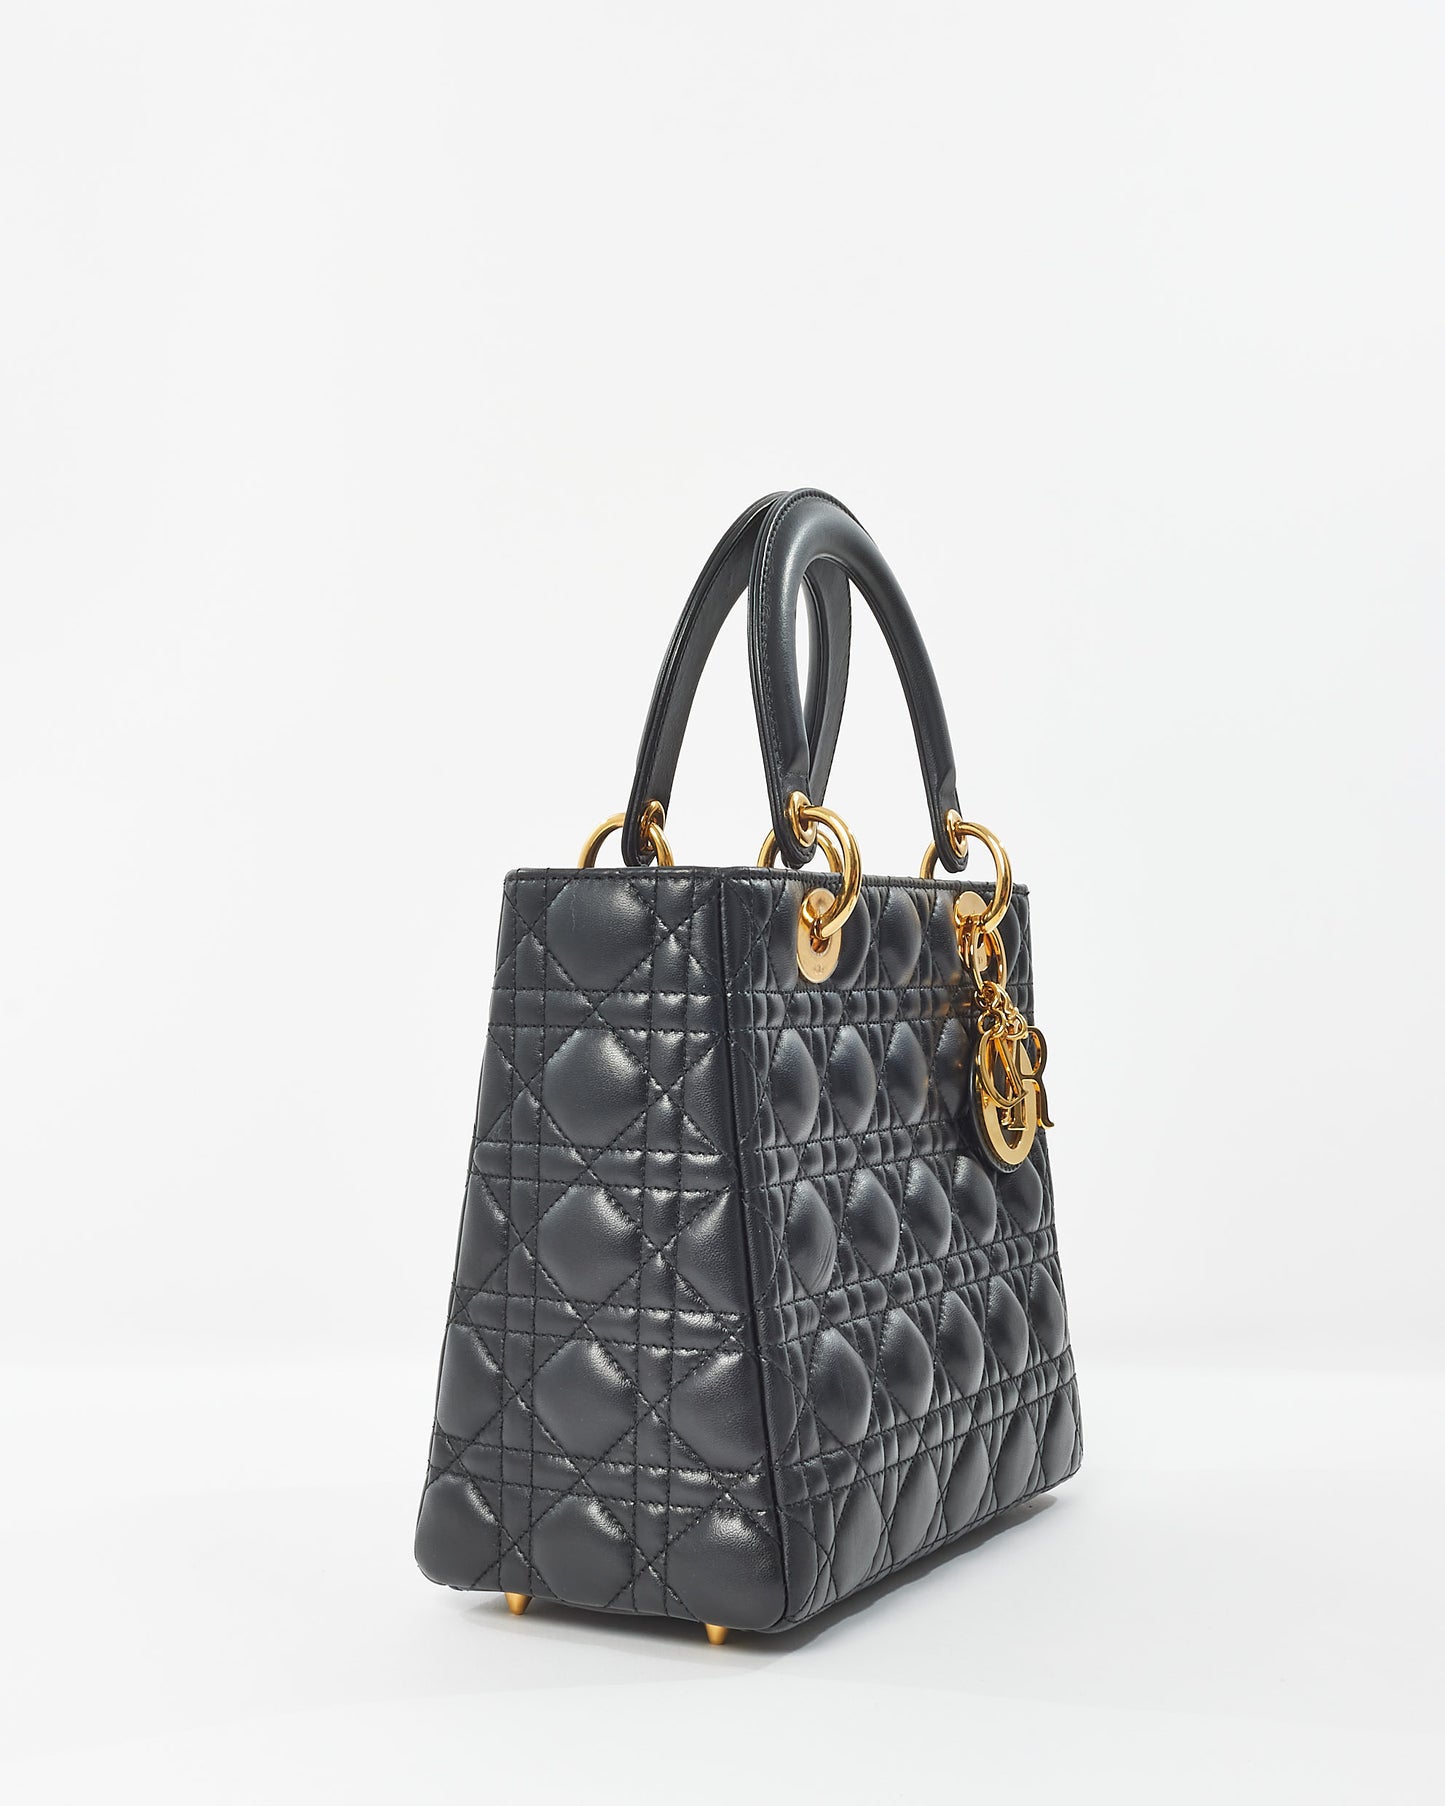 Dior Black Lambskin Leather GHW Medium Lady Dior Bag